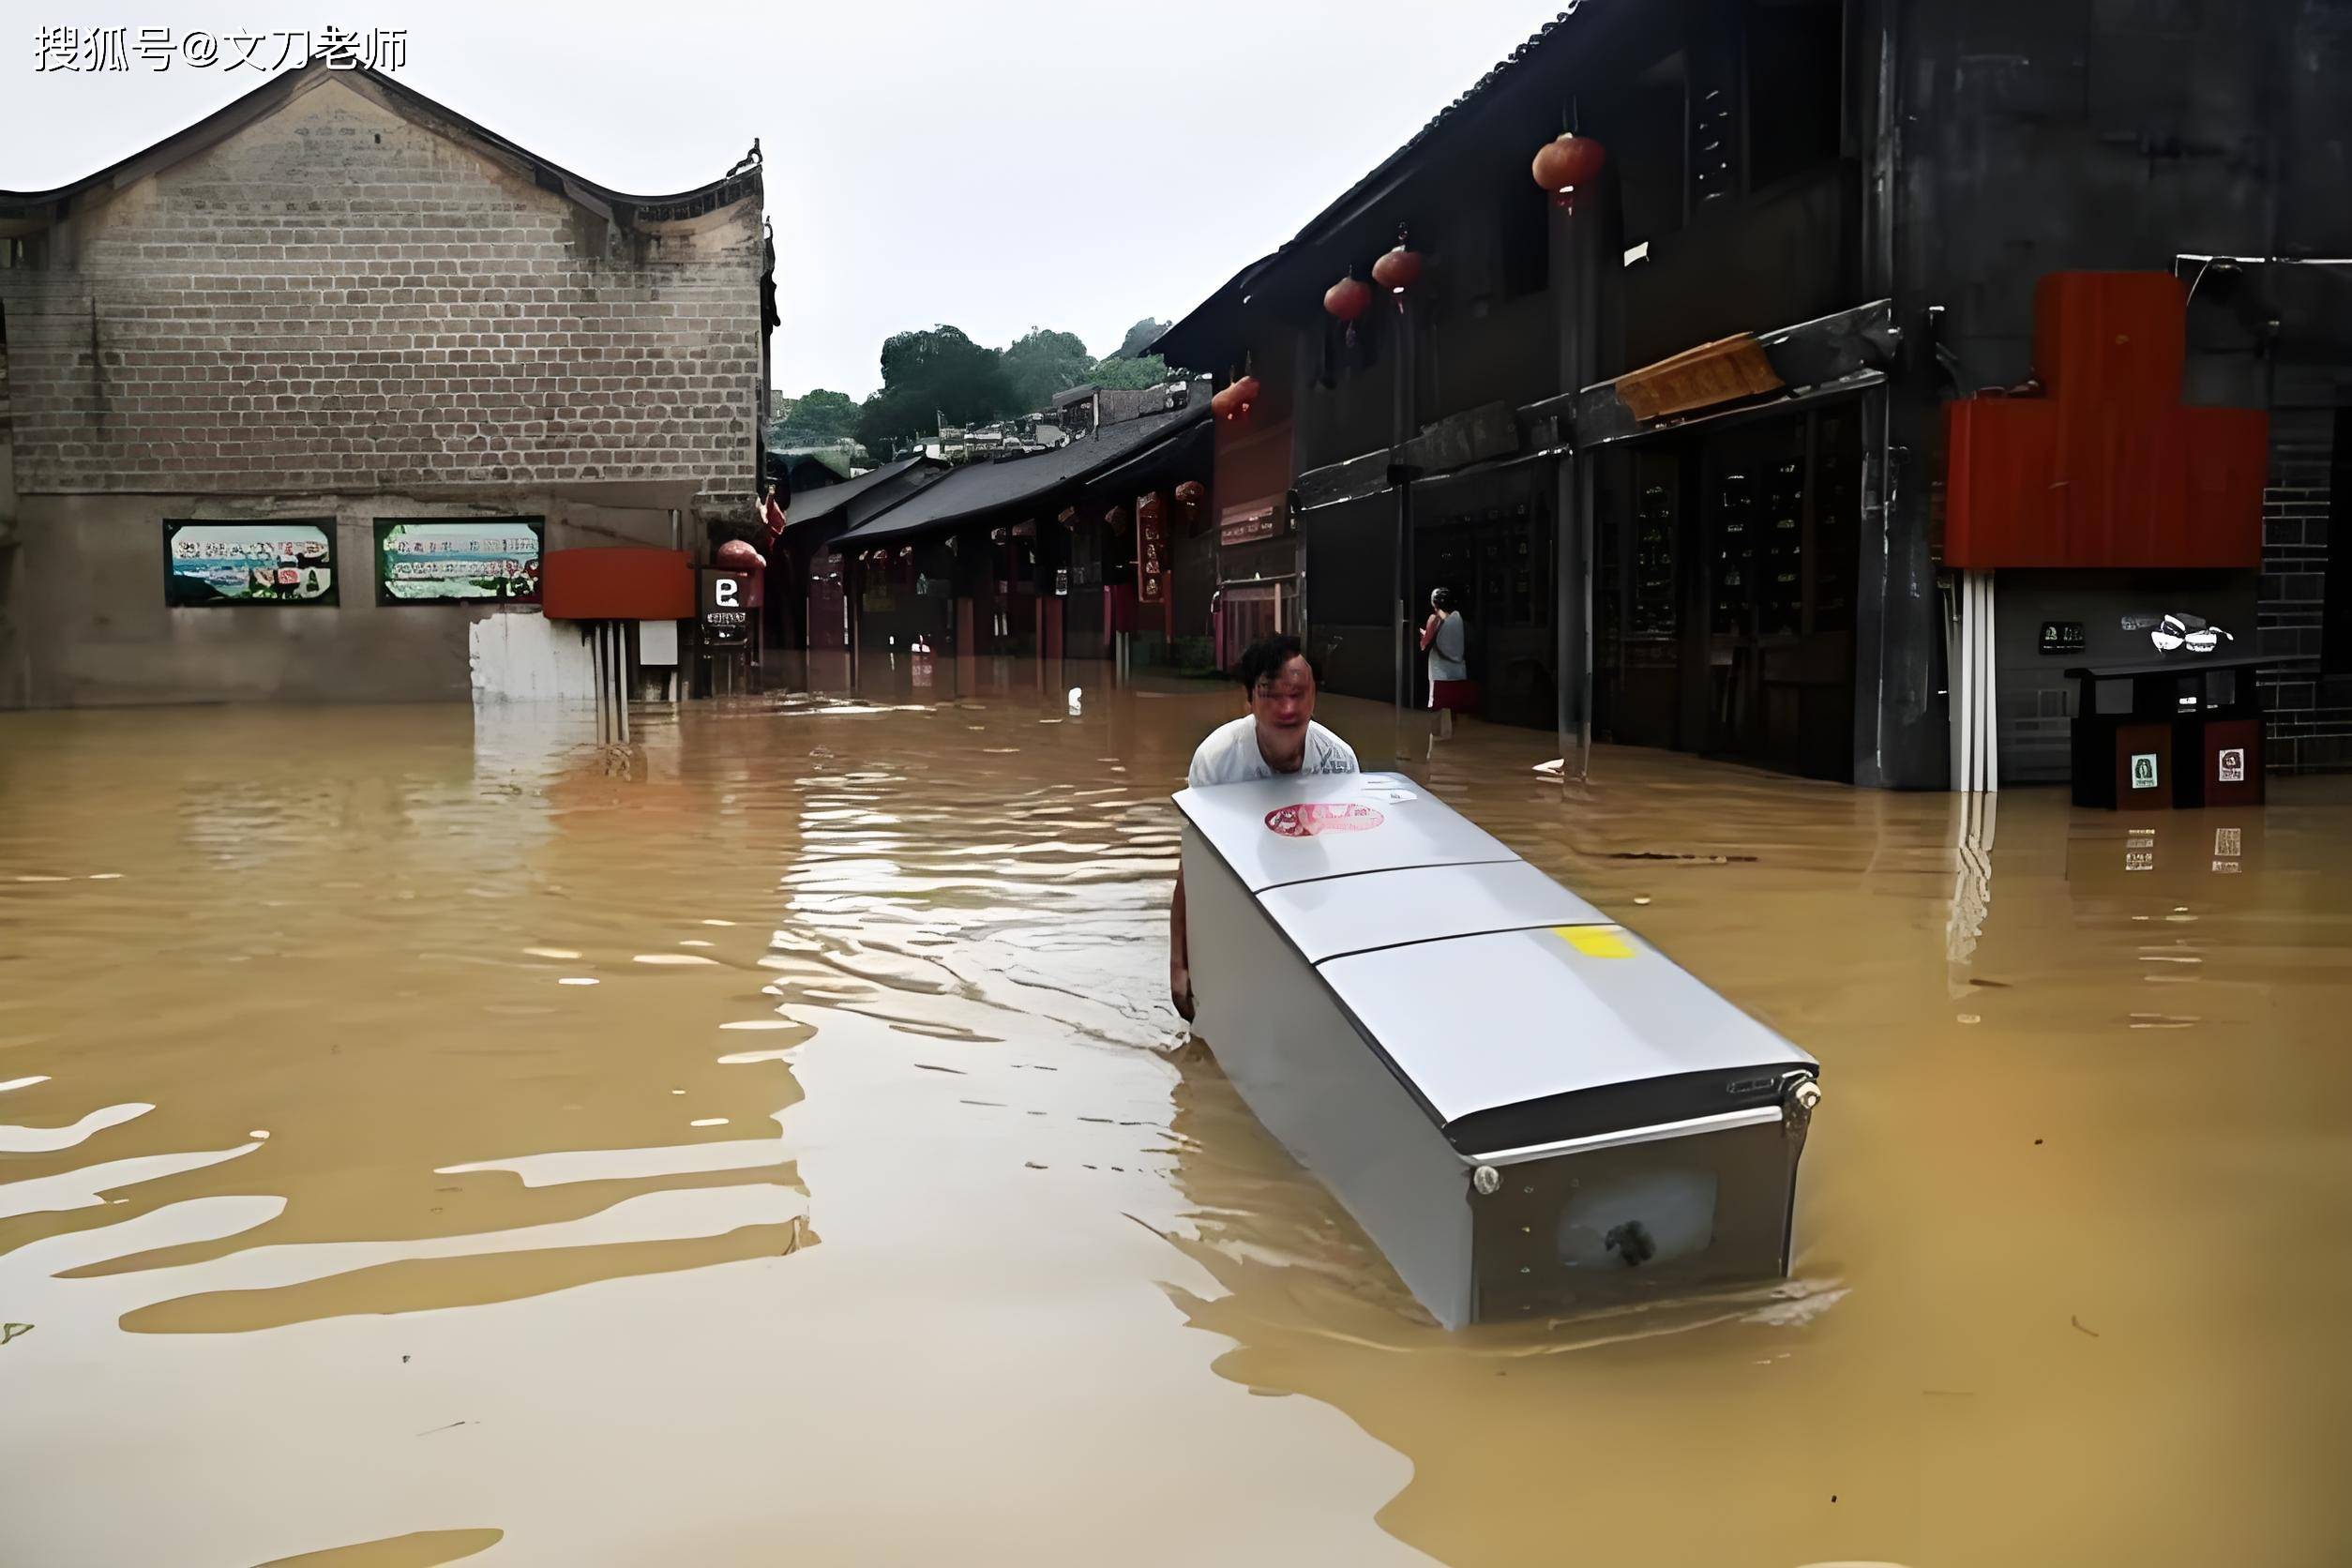 冰箱船?广西南宁:强降雨致18人被困,消防救援人员紧急疏散转移